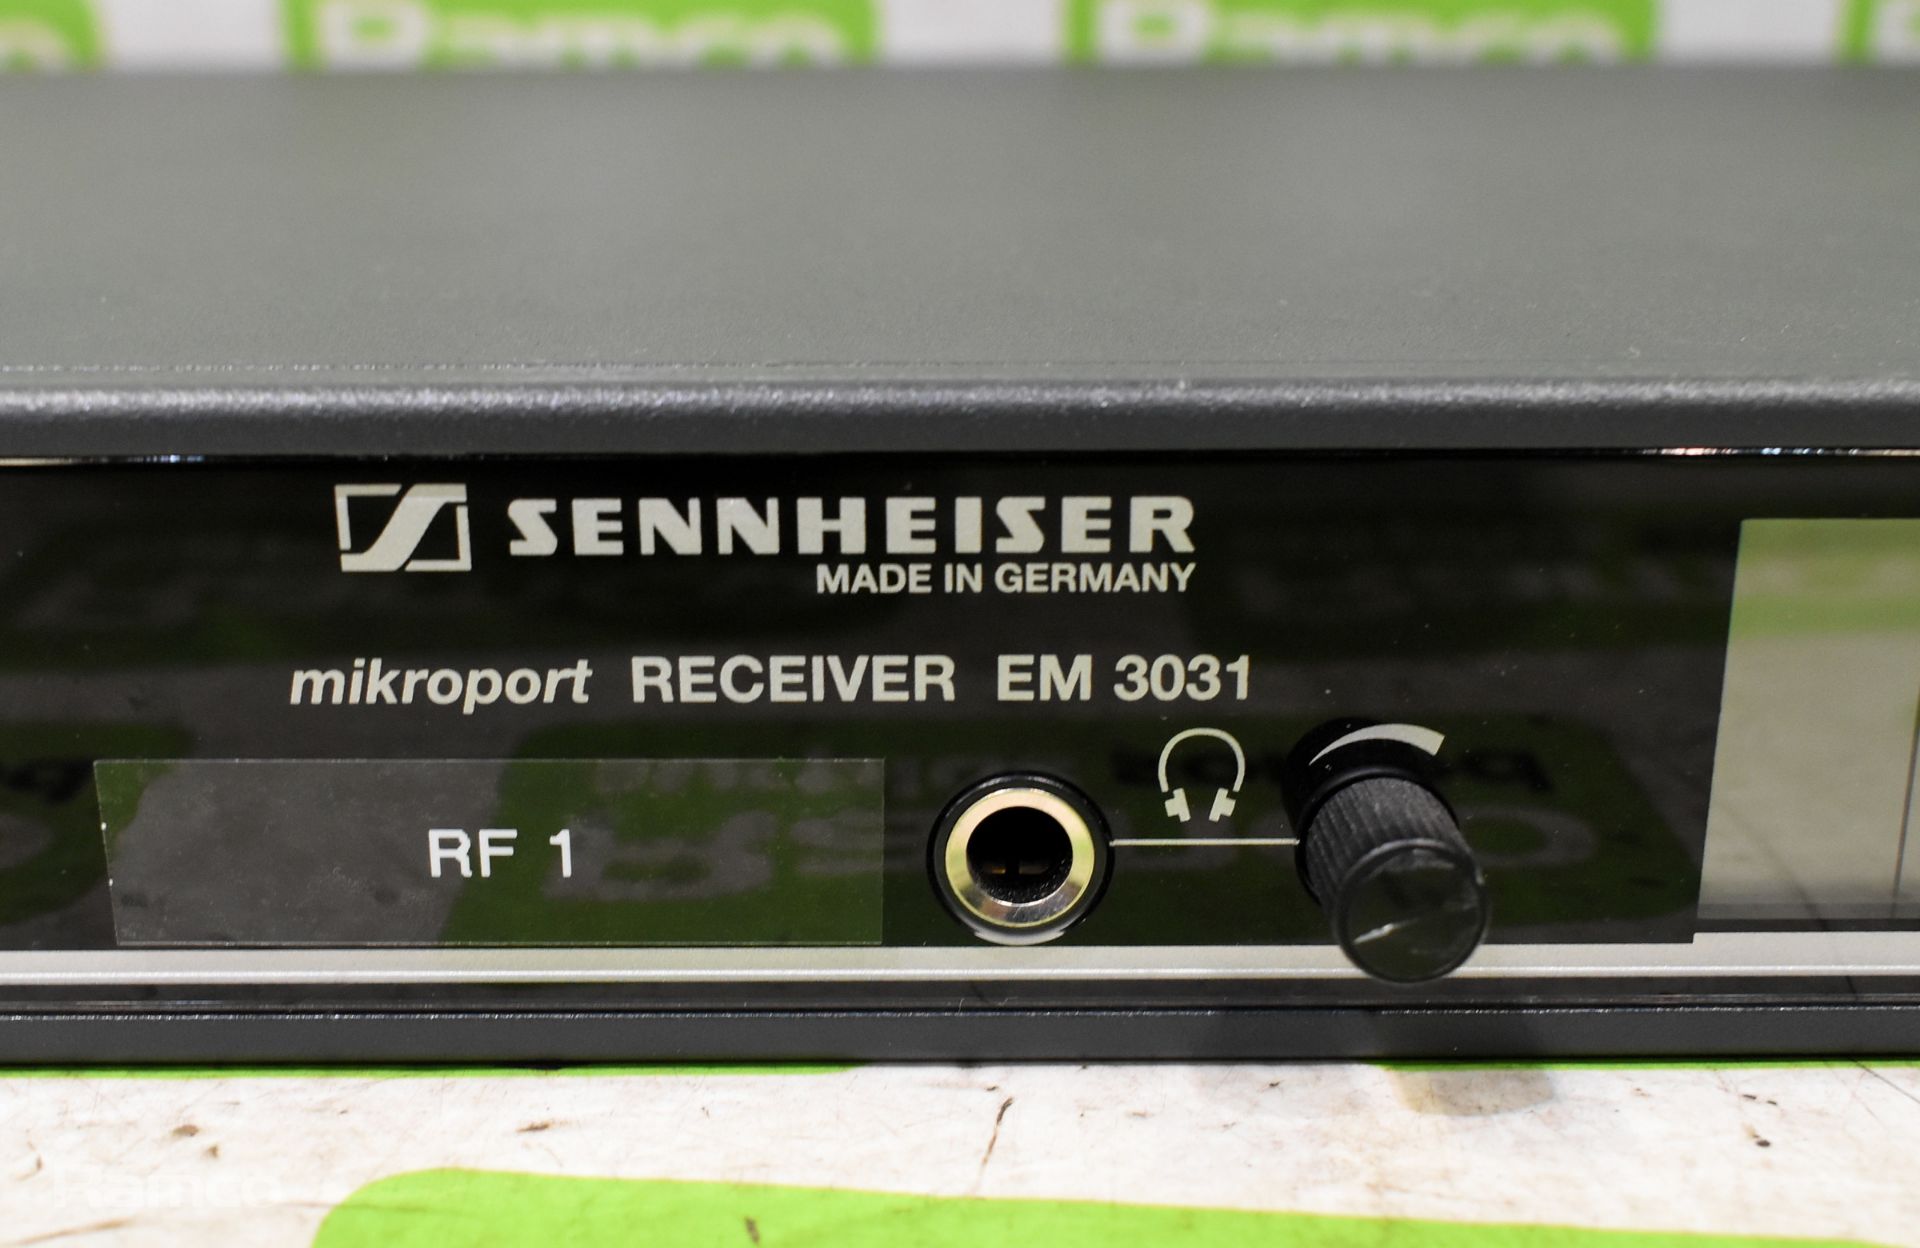 Sennheiser EM3031 mikroport receiver 606-630 MHz - Rack mountable - Image 2 of 4